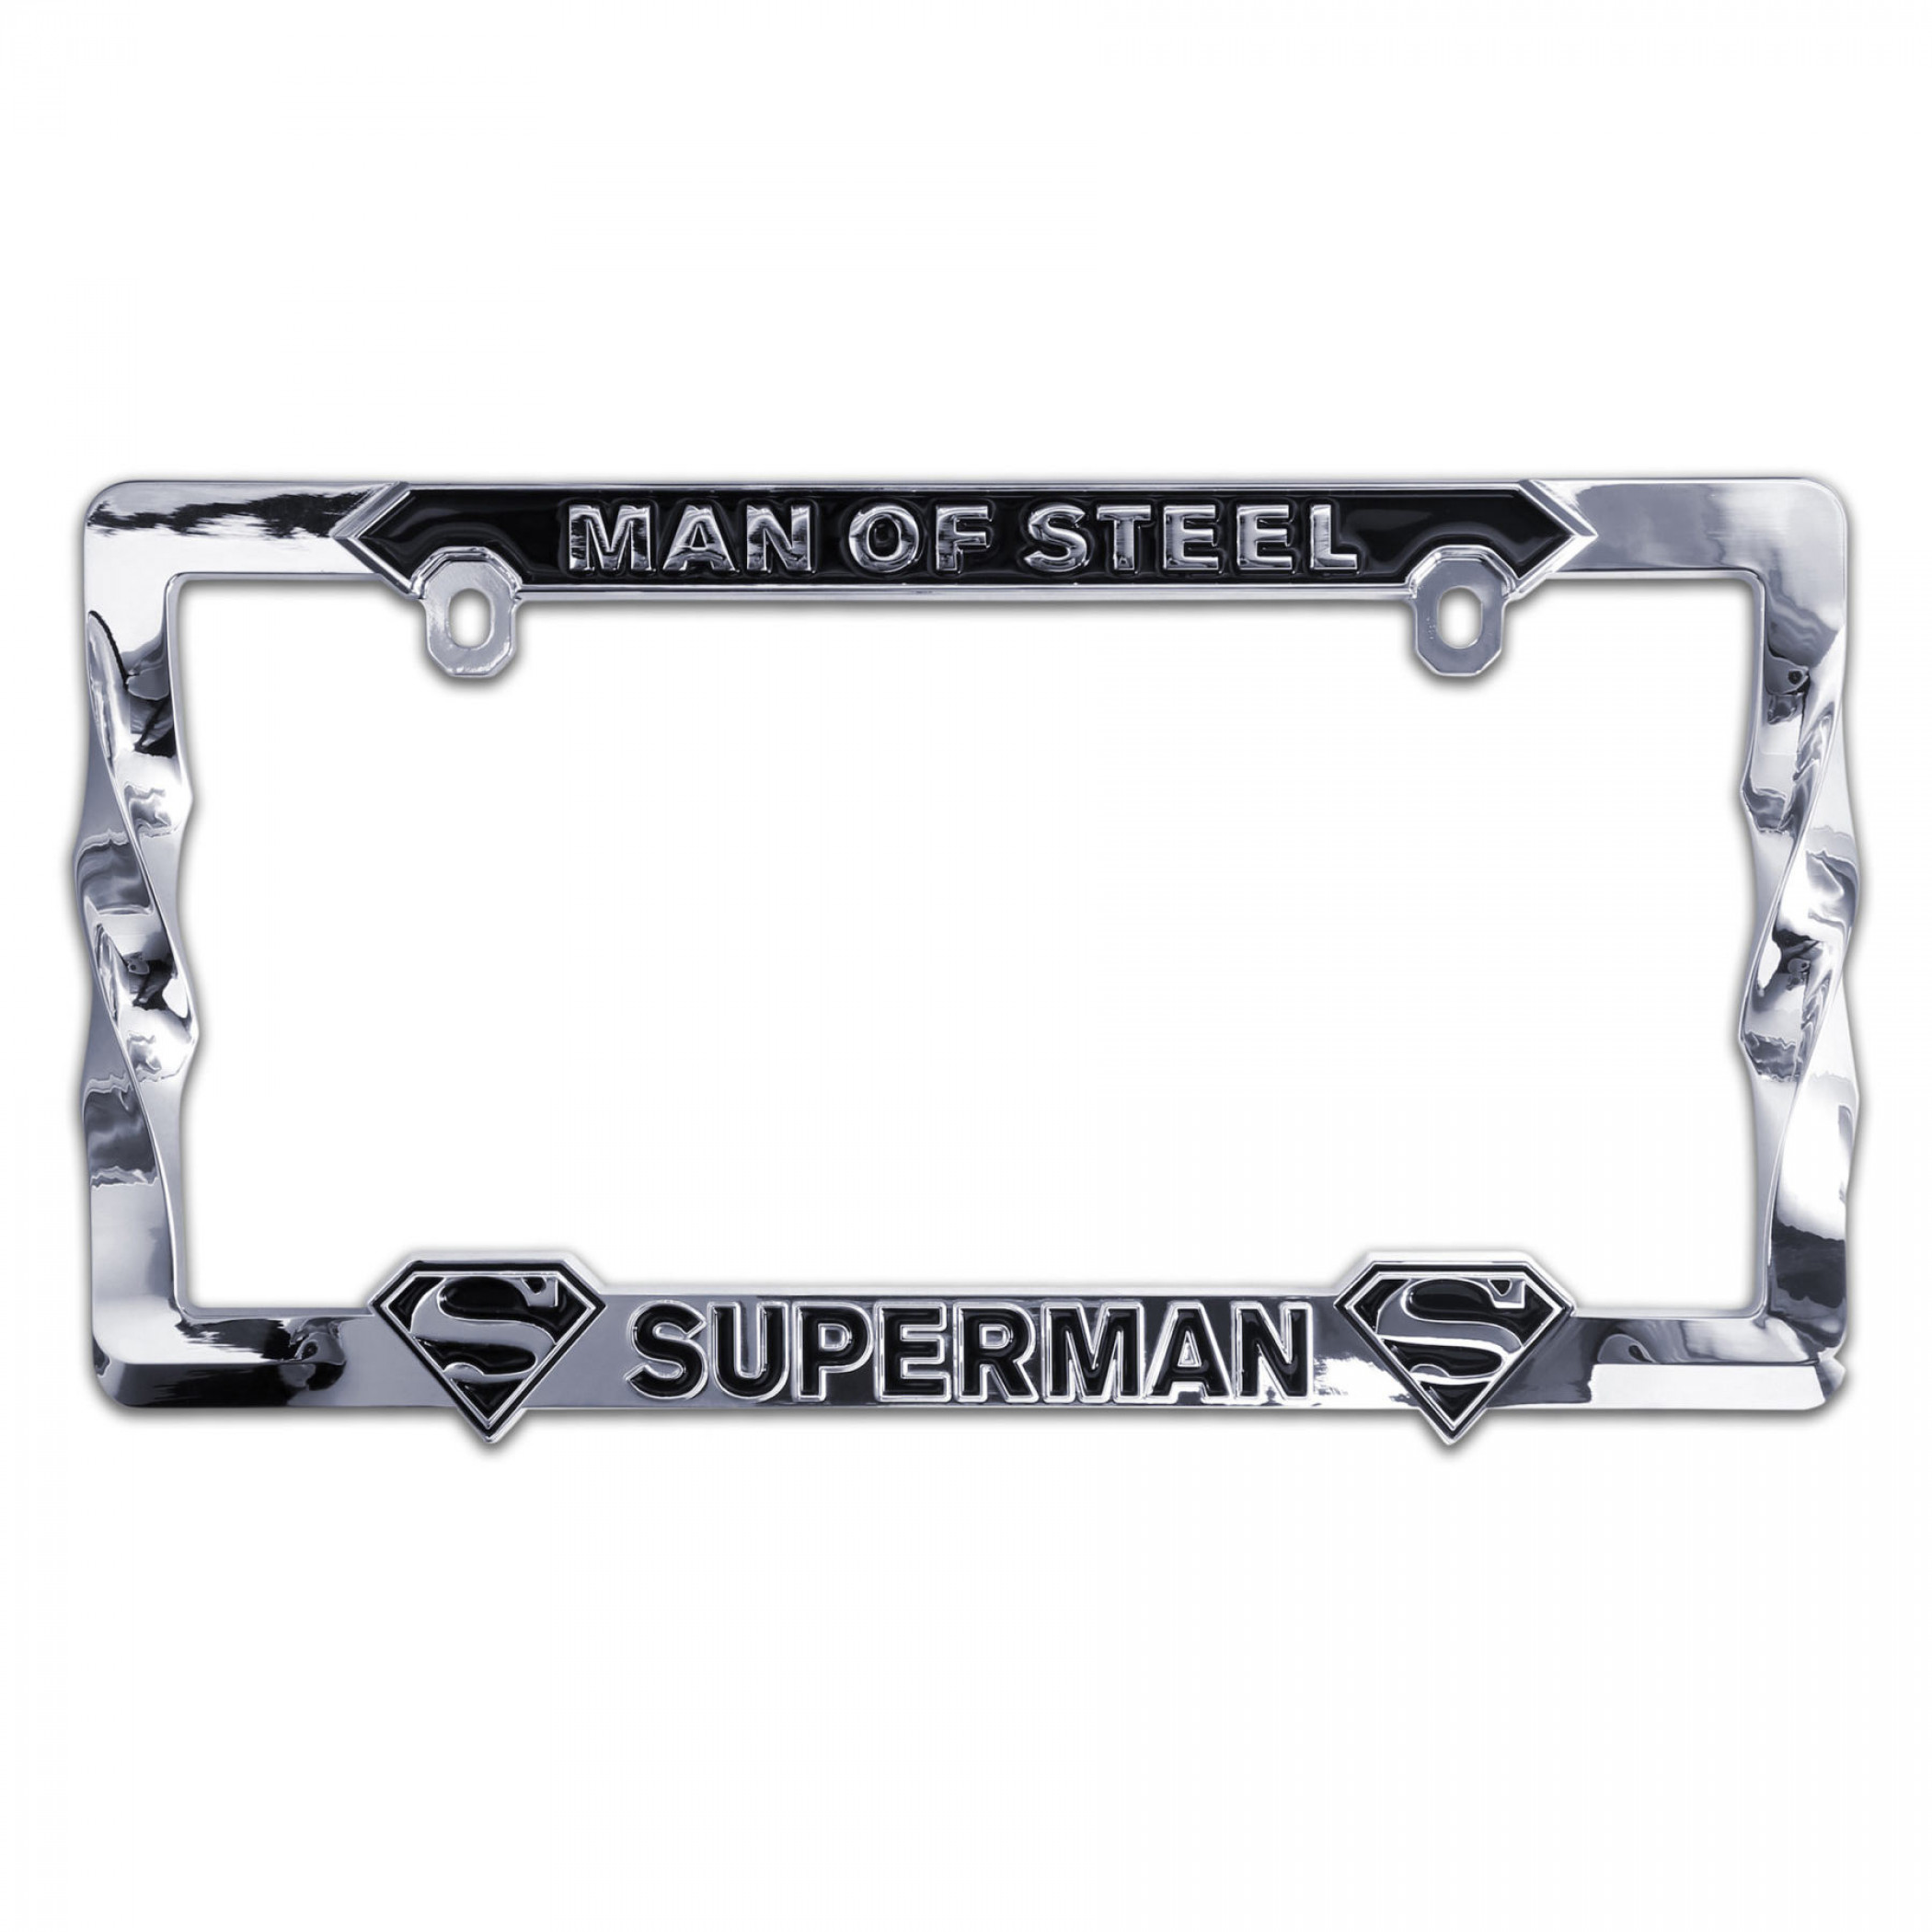 Superman 3D License Plate Frame